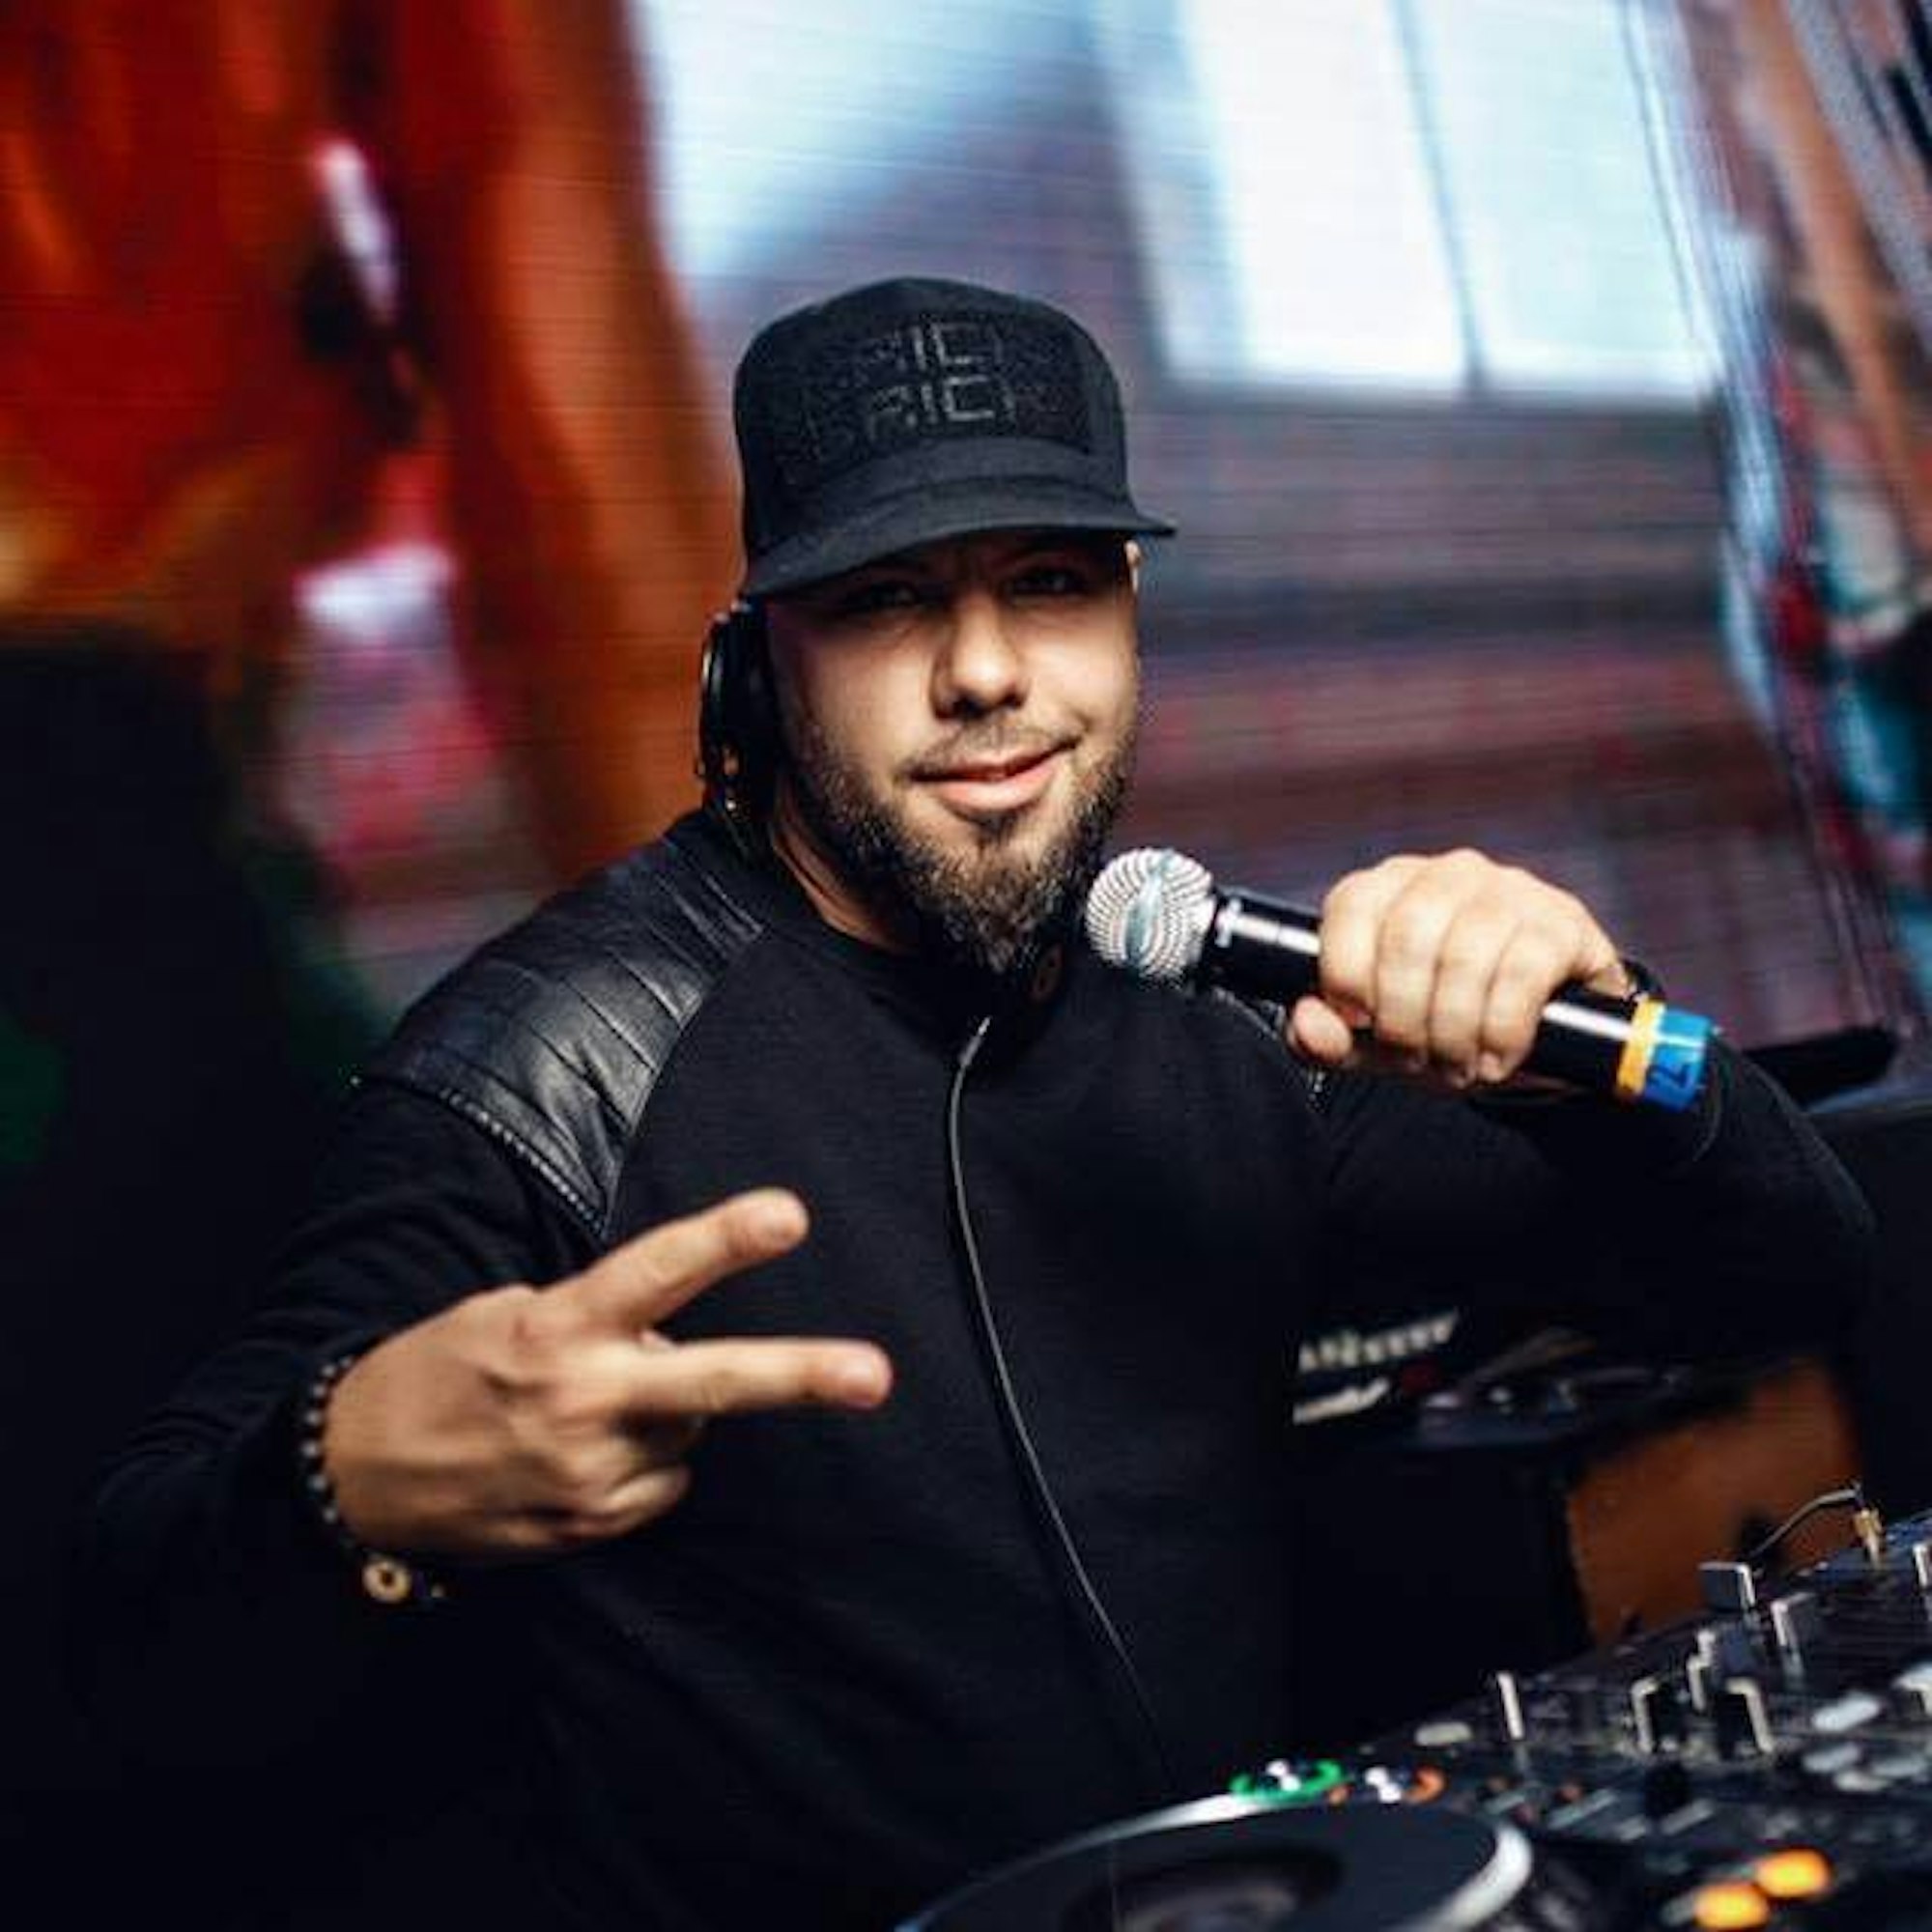 Der Kölner DJ Stutter, bürgerlich Deniz Köse, posiert 2018 in Köln. Er wurde am 6. Juli 2020 bei einer Polizeikontrolle in Köln von einem Beamten bedroht.